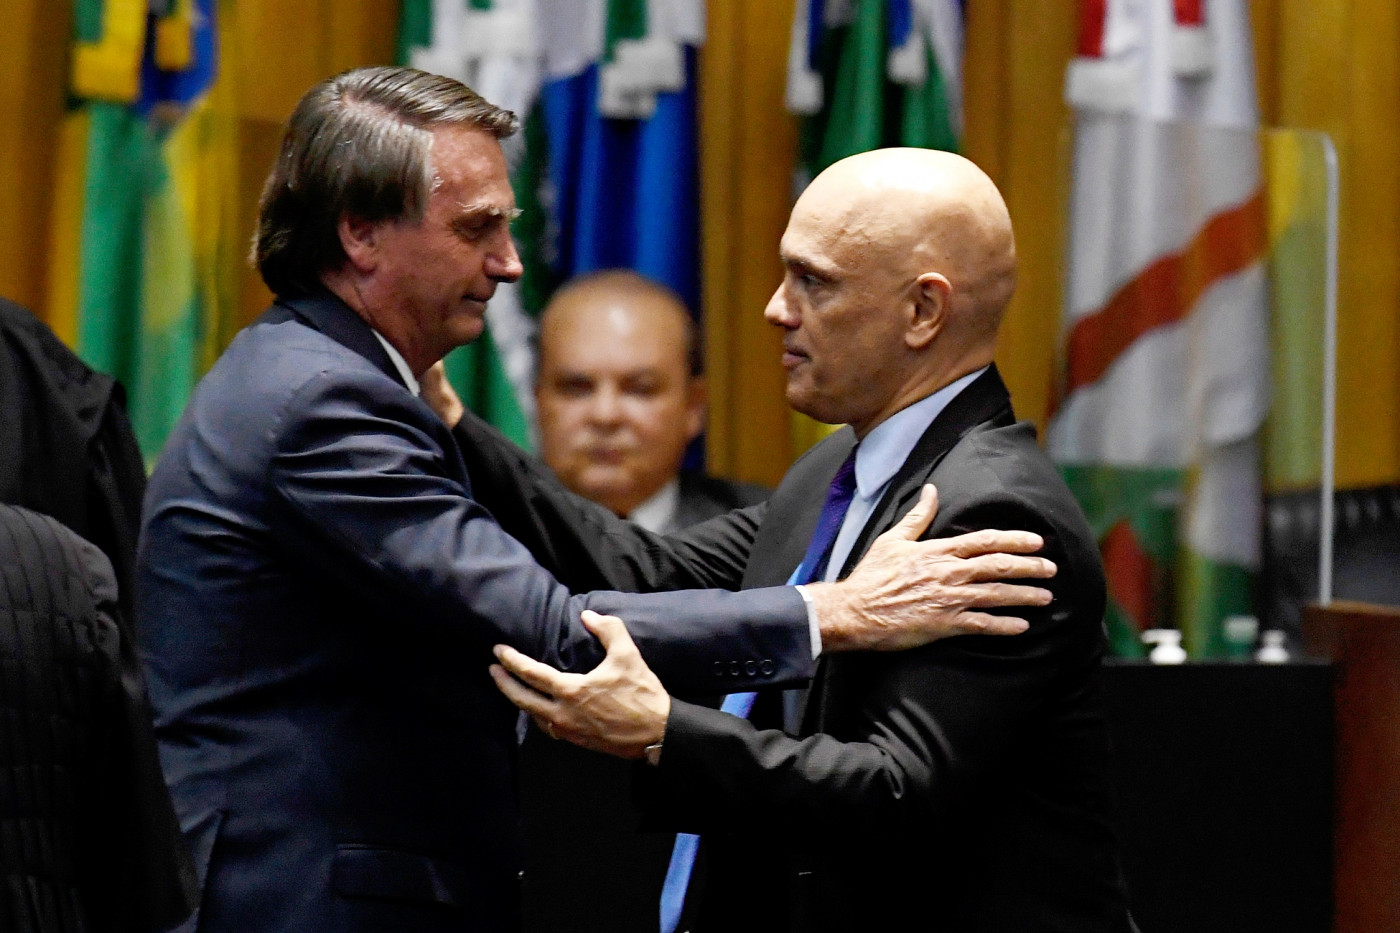 O presidente da república, Jair Bolsonaro, cumprimenta o ministro do Superior Tribunal Federal, Alexandre de Moraes, durante cerimônia de posse dos novos ministro do Tribunal Superior do Trabalho nesta quinta-feira, 19 de maio.